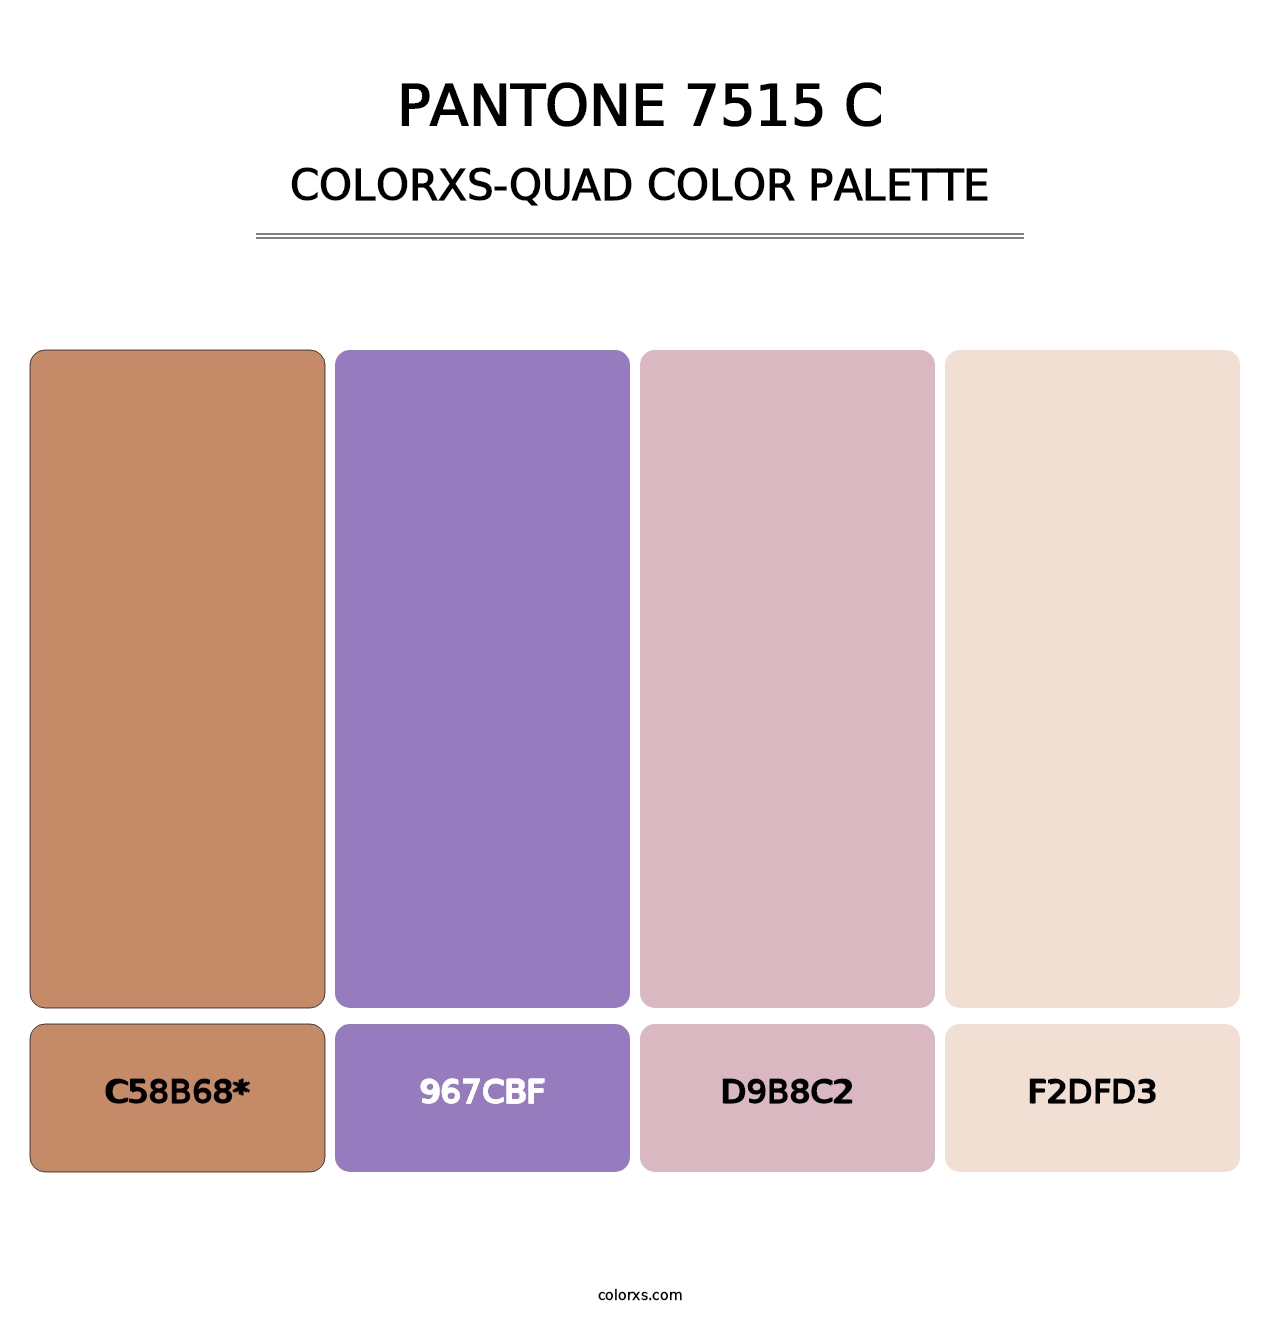 PANTONE 7515 C - Colorxs Quad Palette